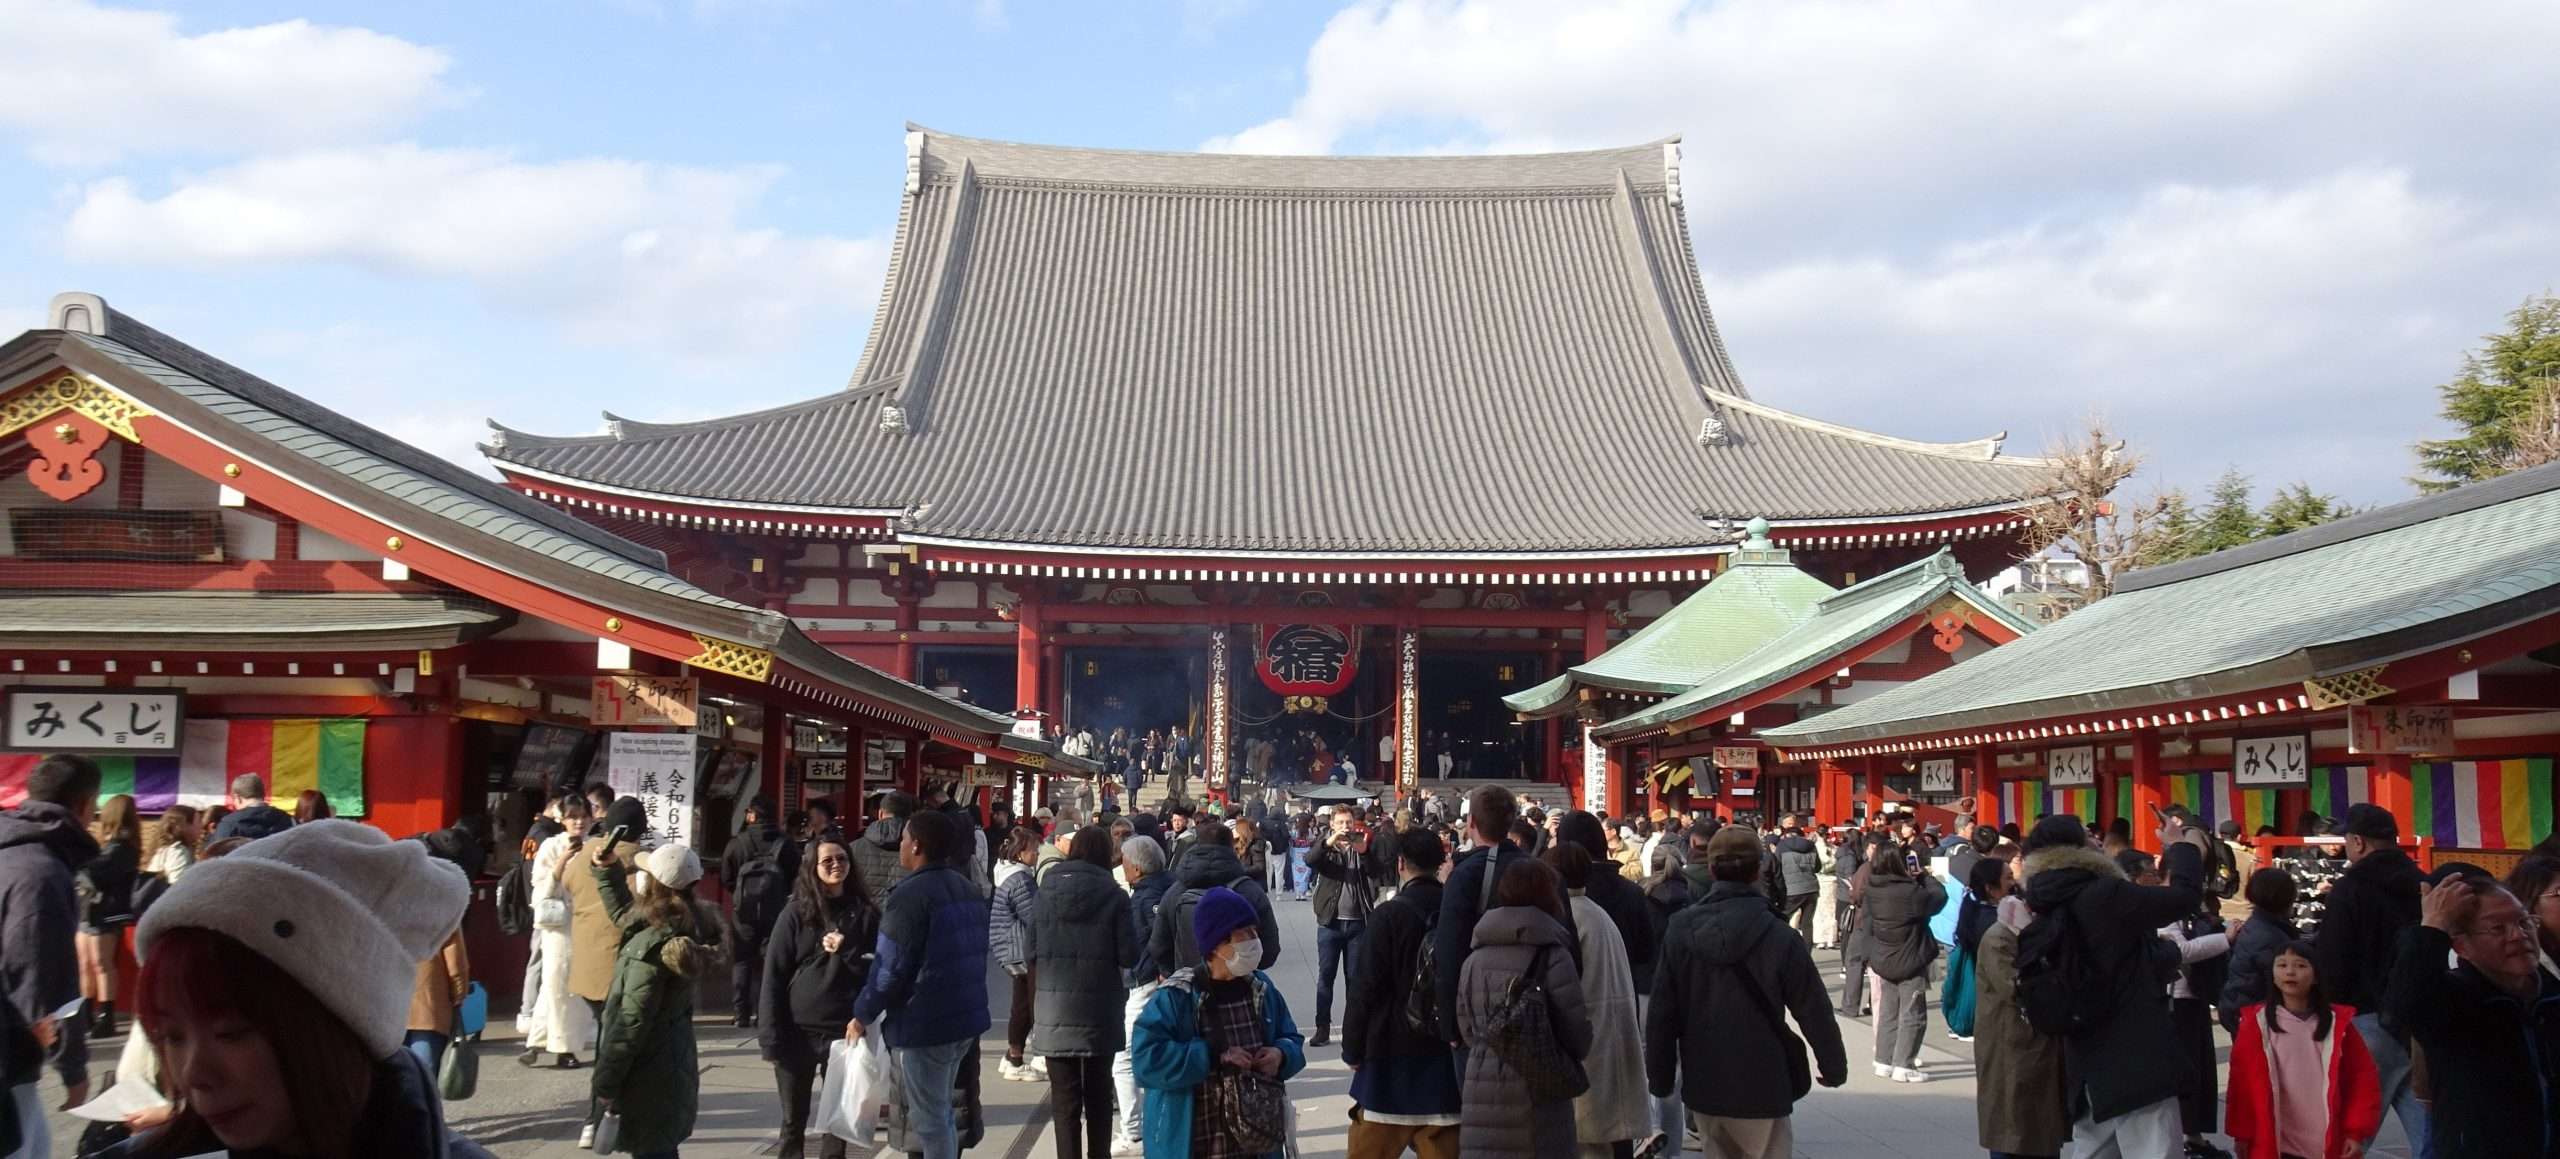 Im Sensō-ji in Asakusa